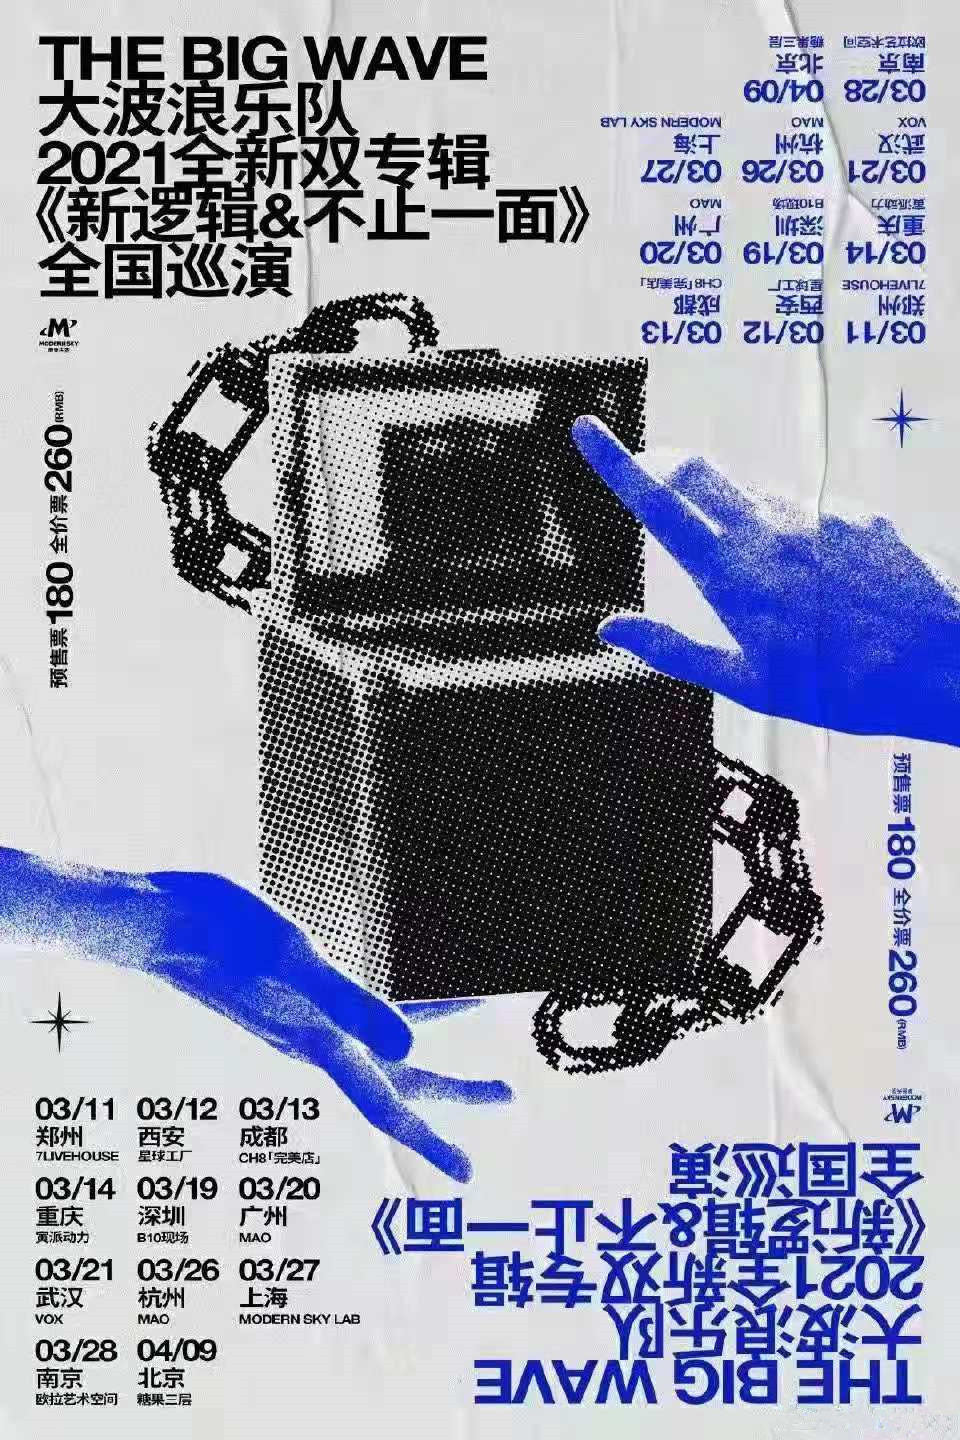 大波浪乐队2021全新双专辑巡演《新逻辑》《不止一面》全国巡演-南京站